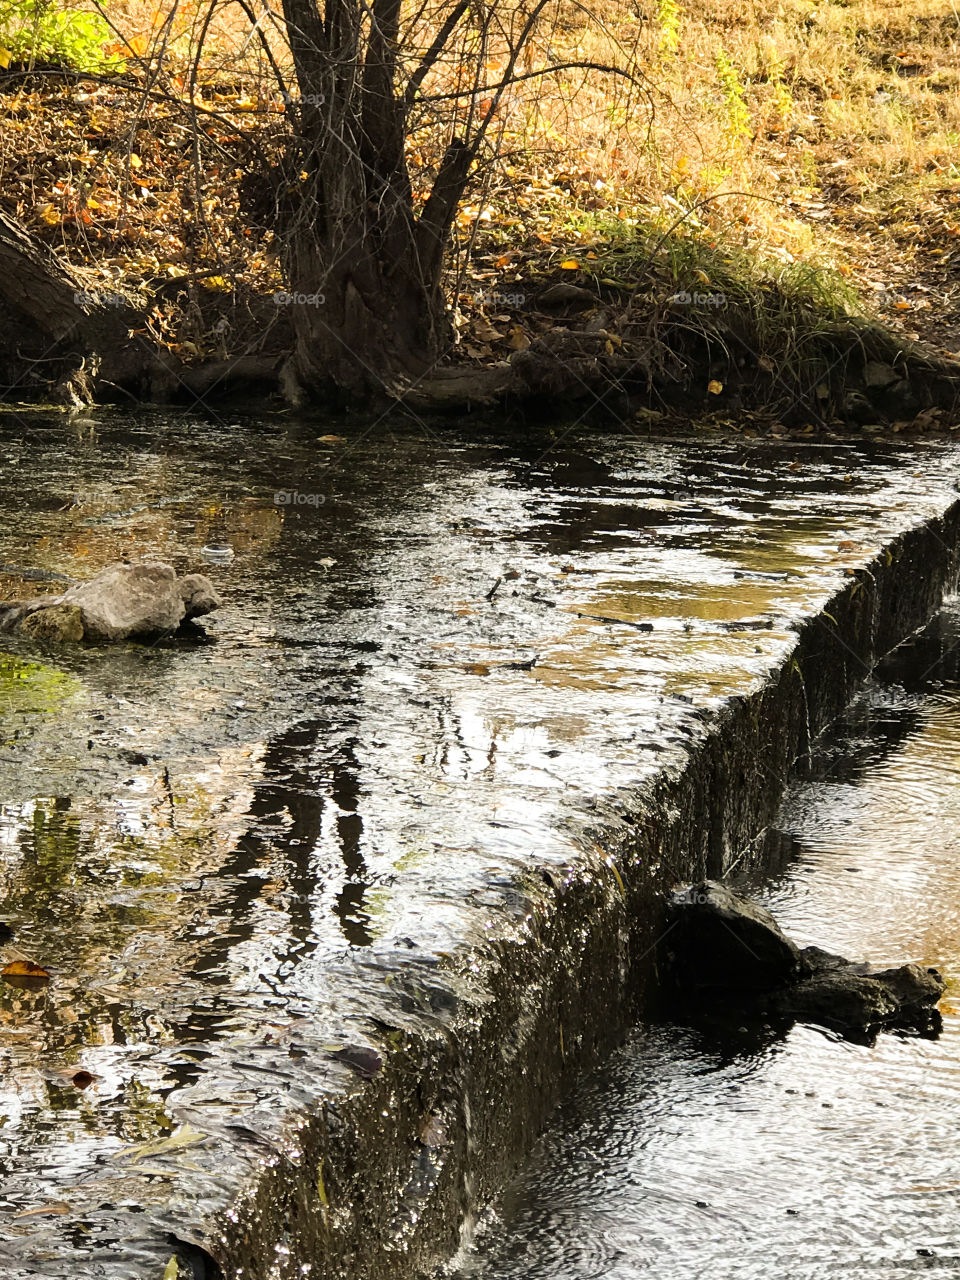 Autumn reflection on stream
